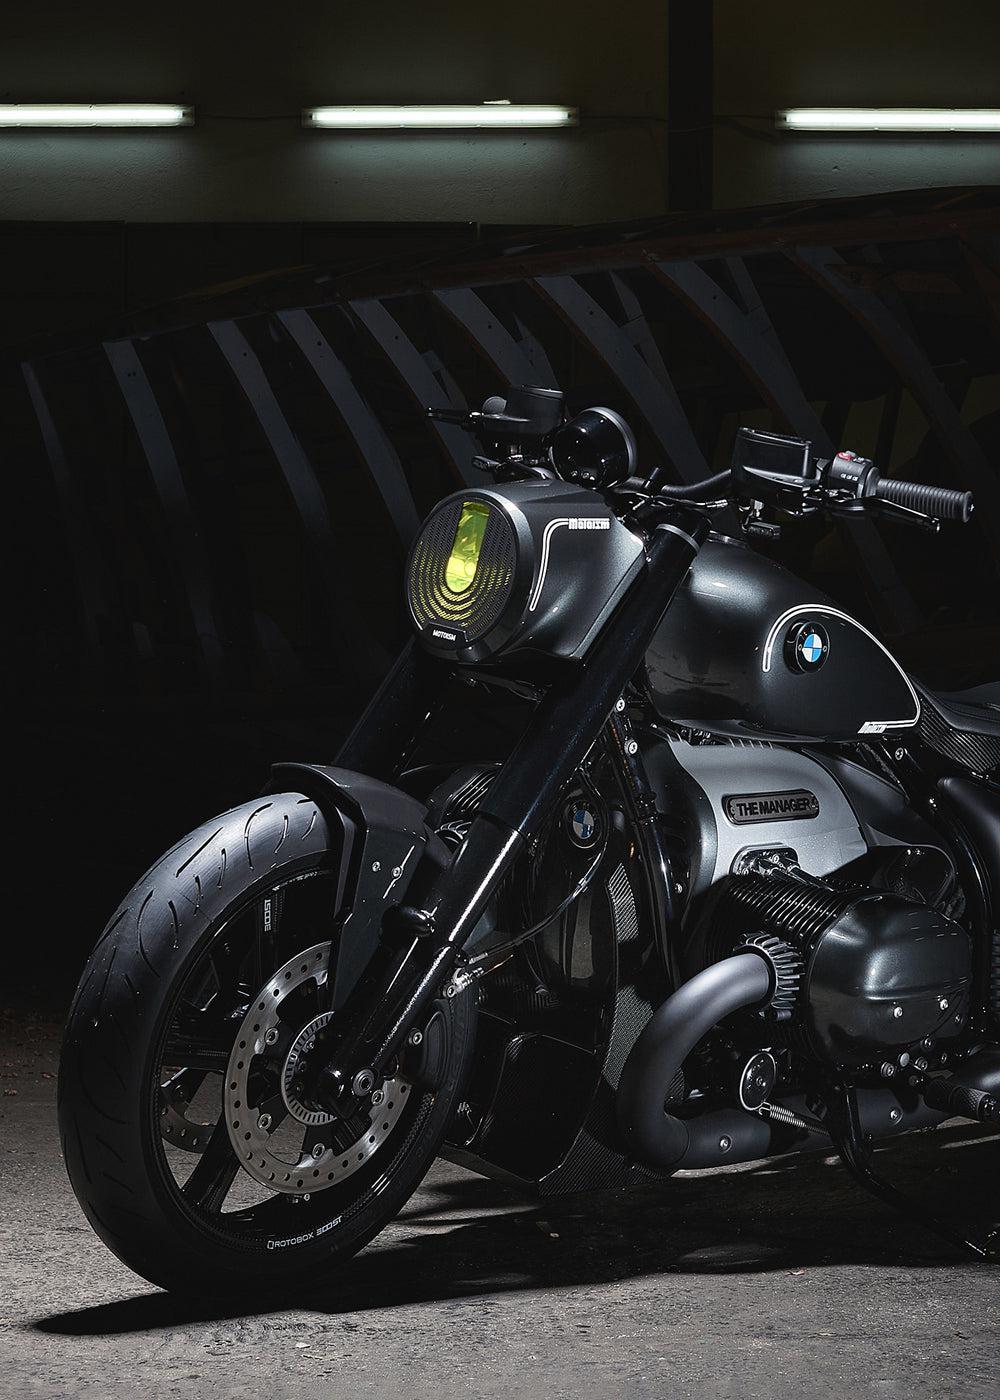 BMW Motorrad Tankdeckel schwarz